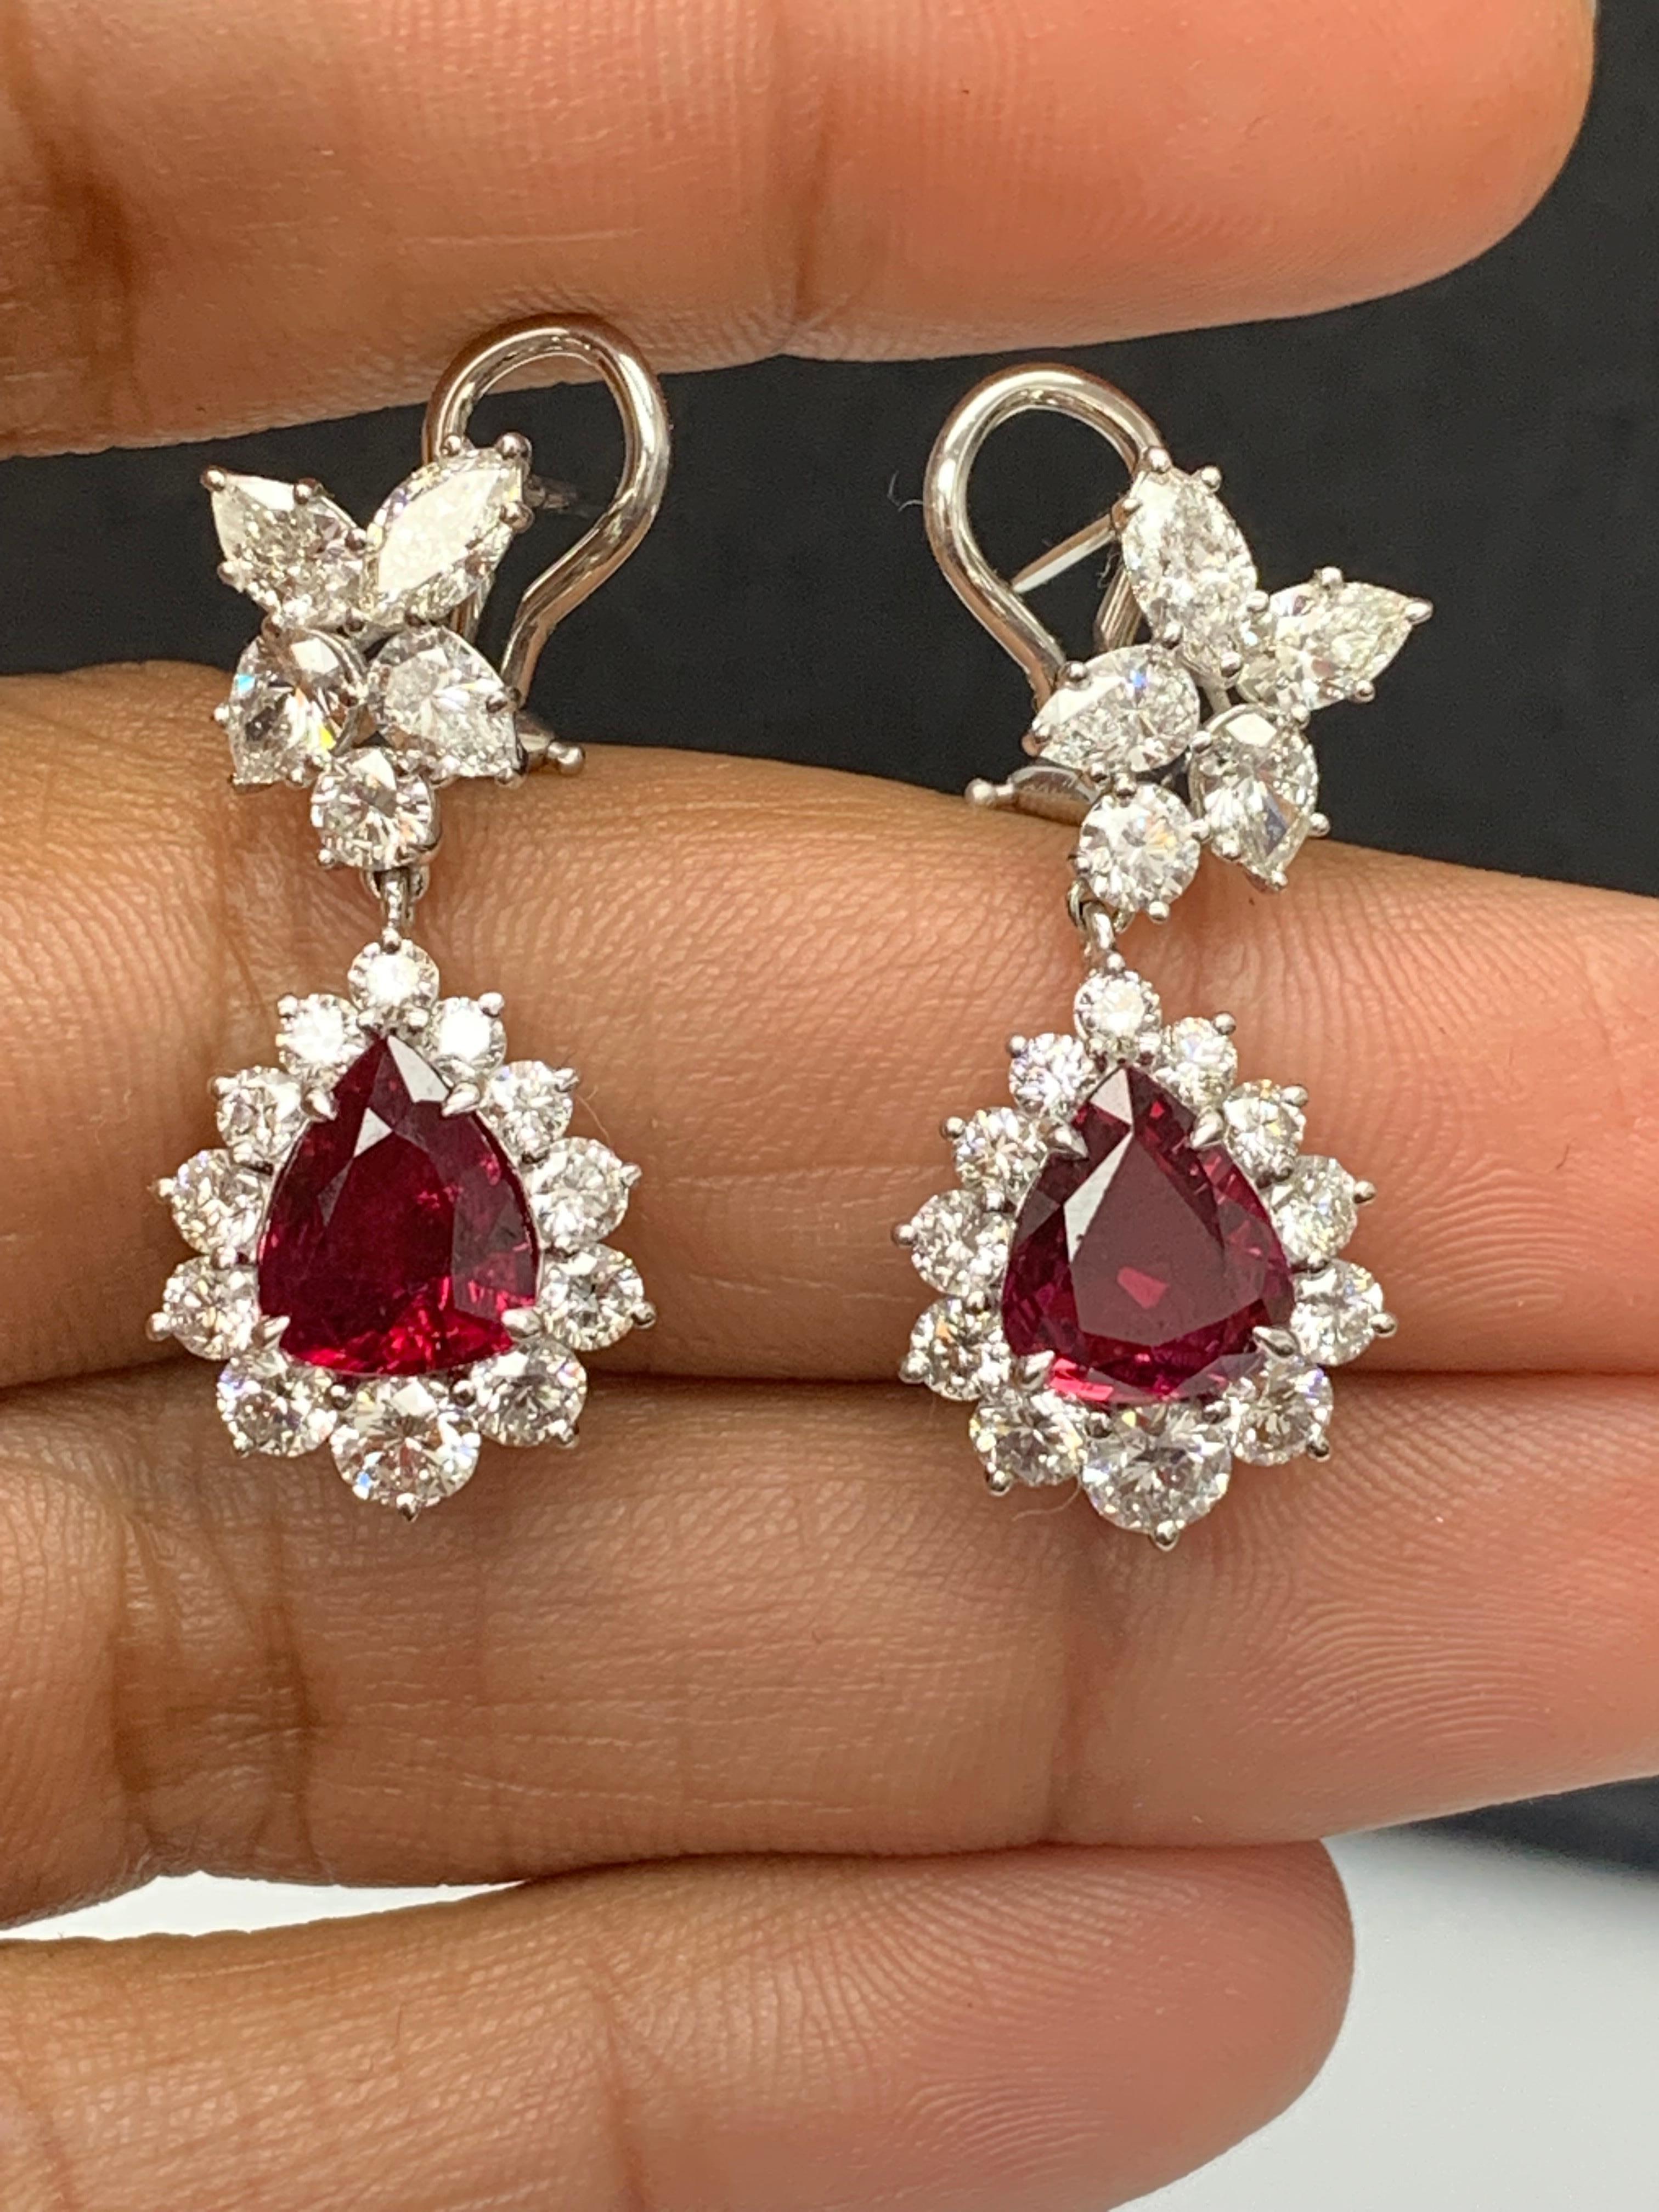 Certified 4.02 Carat Pear Shape Rubies & Diamond Drop Earrings in 18K White Gold For Sale 2